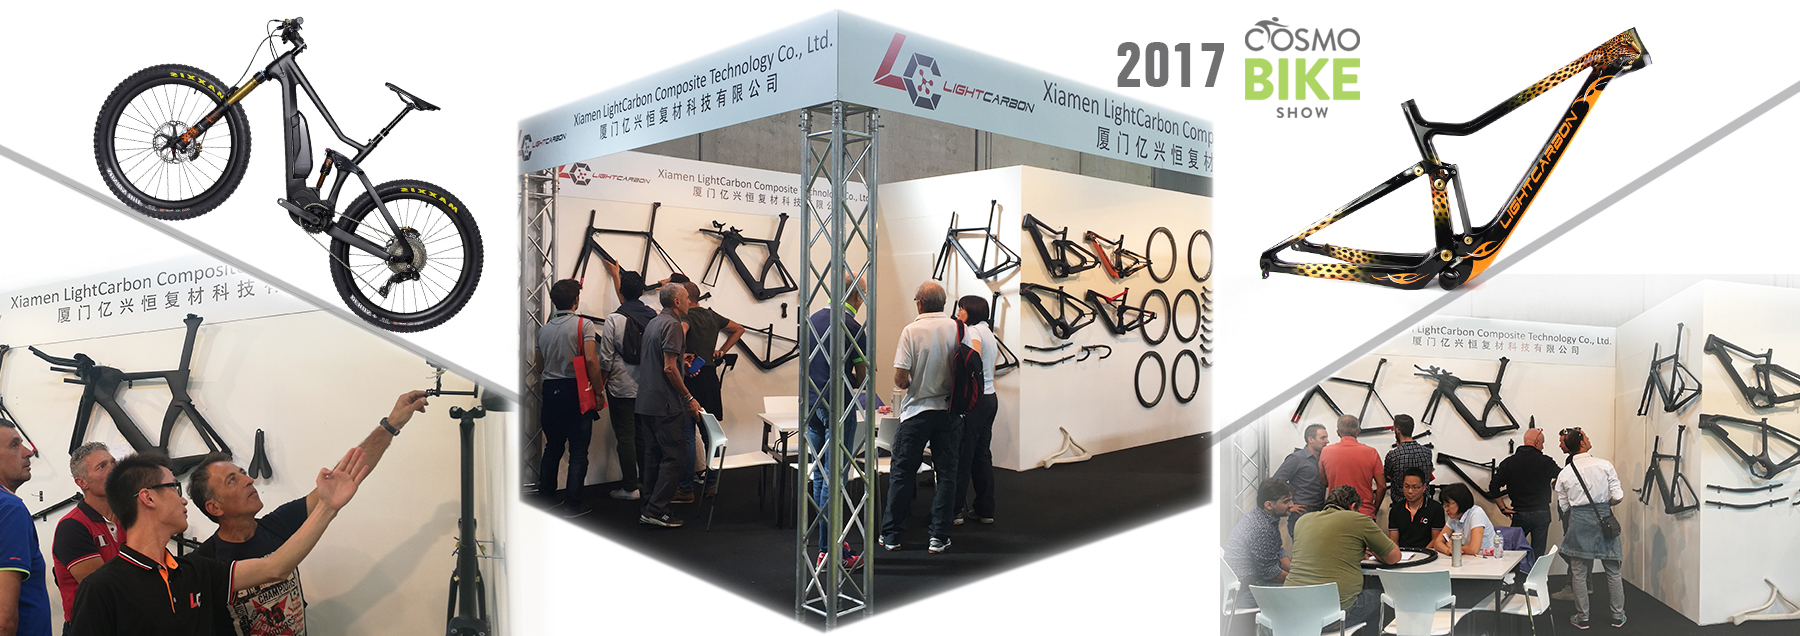 Espectáculo de bicicletas cosmo de carbono ligero 2017